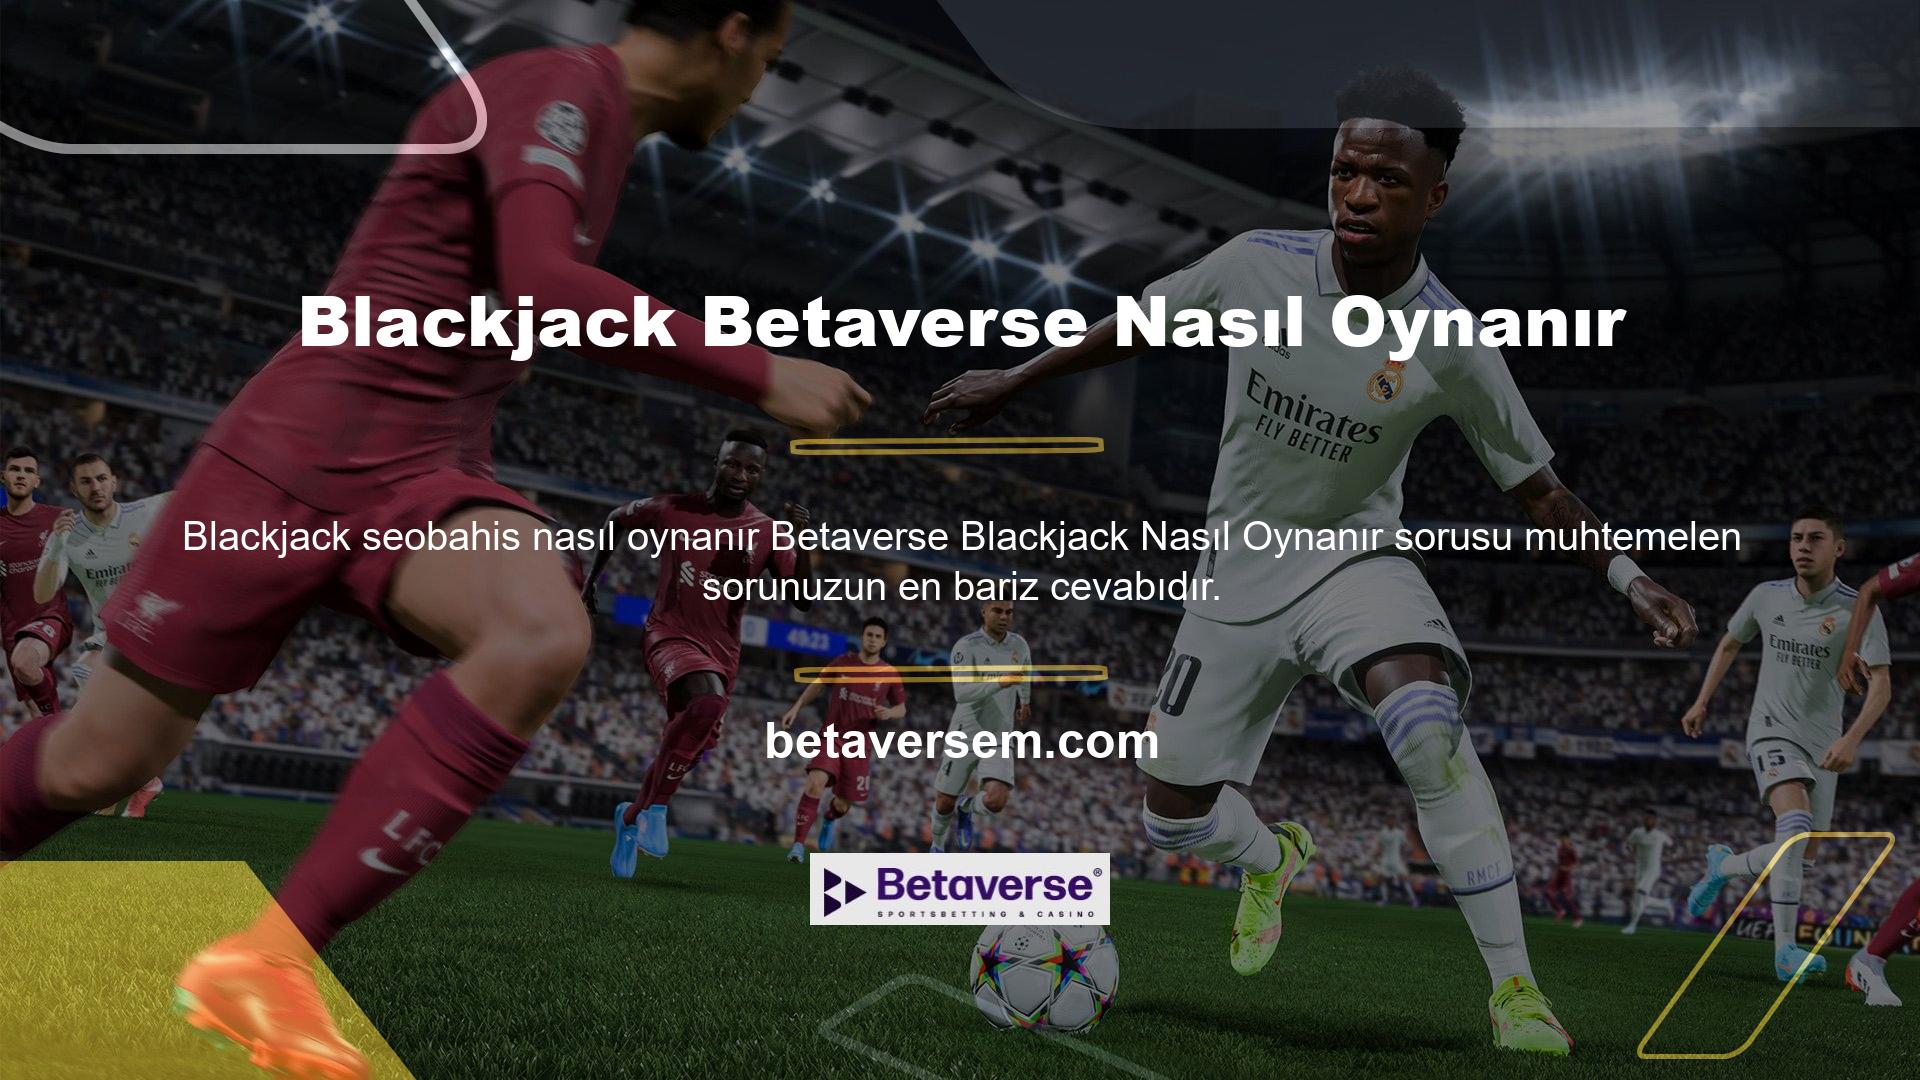 Betaverse Blackjack Çeşitleri Betaverse casino sitesi, geniş online blackjack oynama seçenekleri ve mobil bahis tasarımı ile canlı casino konseptine profesyonel bir hava katmaktadır